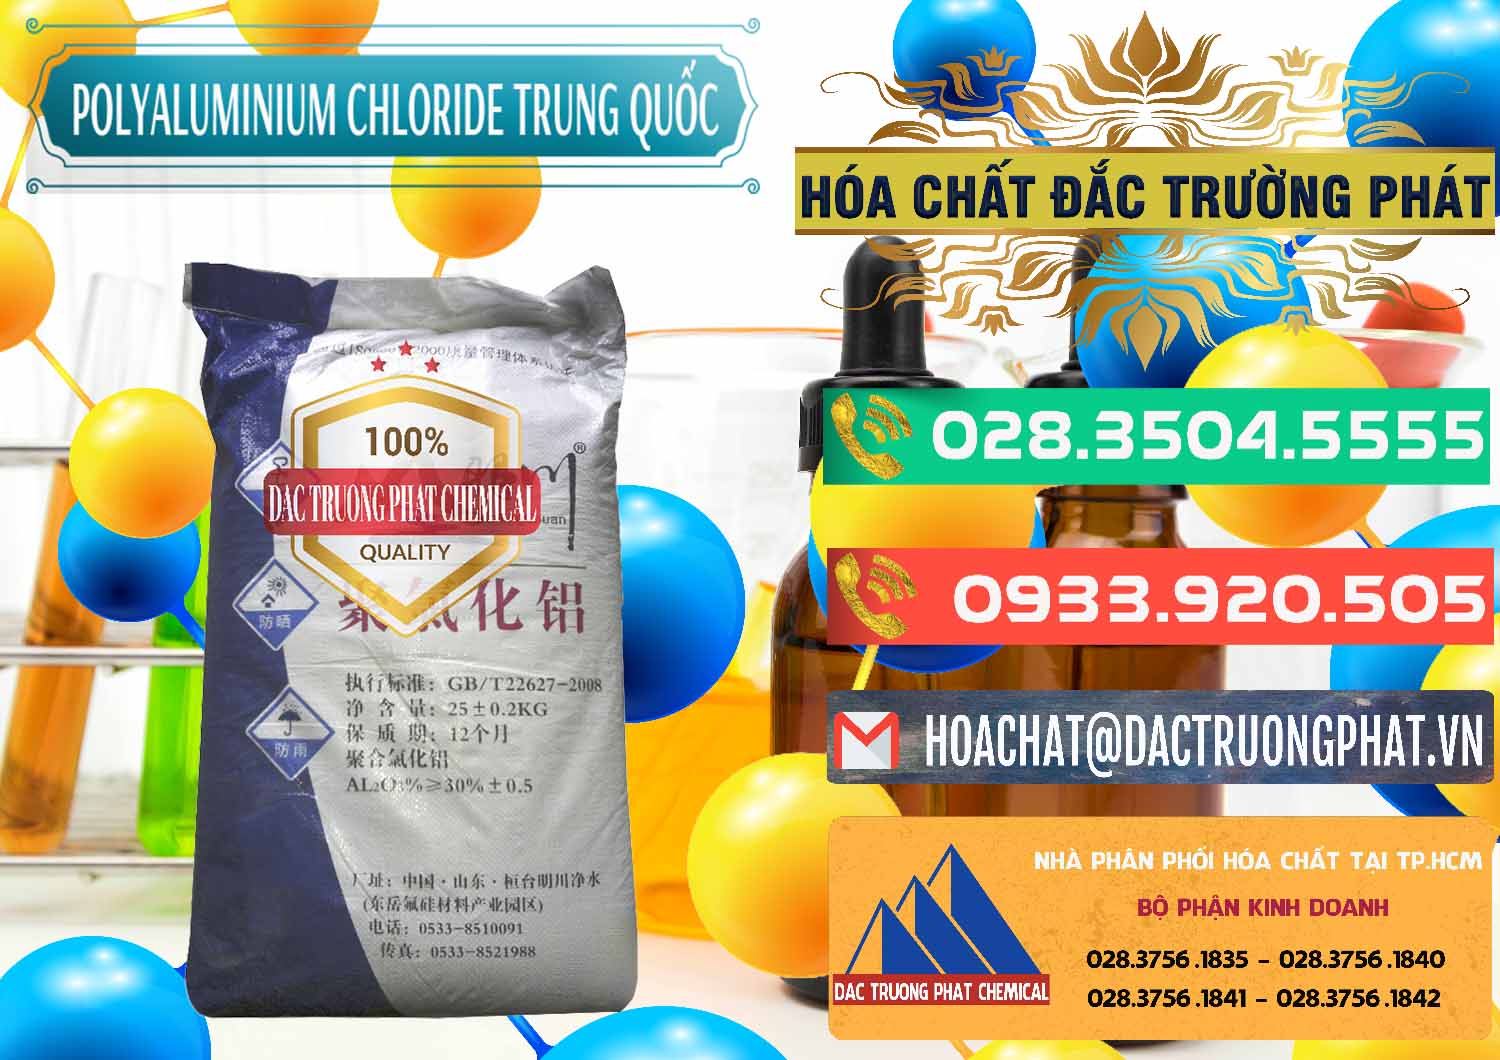 Công ty chuyên kinh doanh - bán PAC - Polyaluminium Chloride Mingchuan Trung Quốc China - 0445 - Nơi phân phối ( cung cấp ) hóa chất tại TP.HCM - congtyhoachat.com.vn